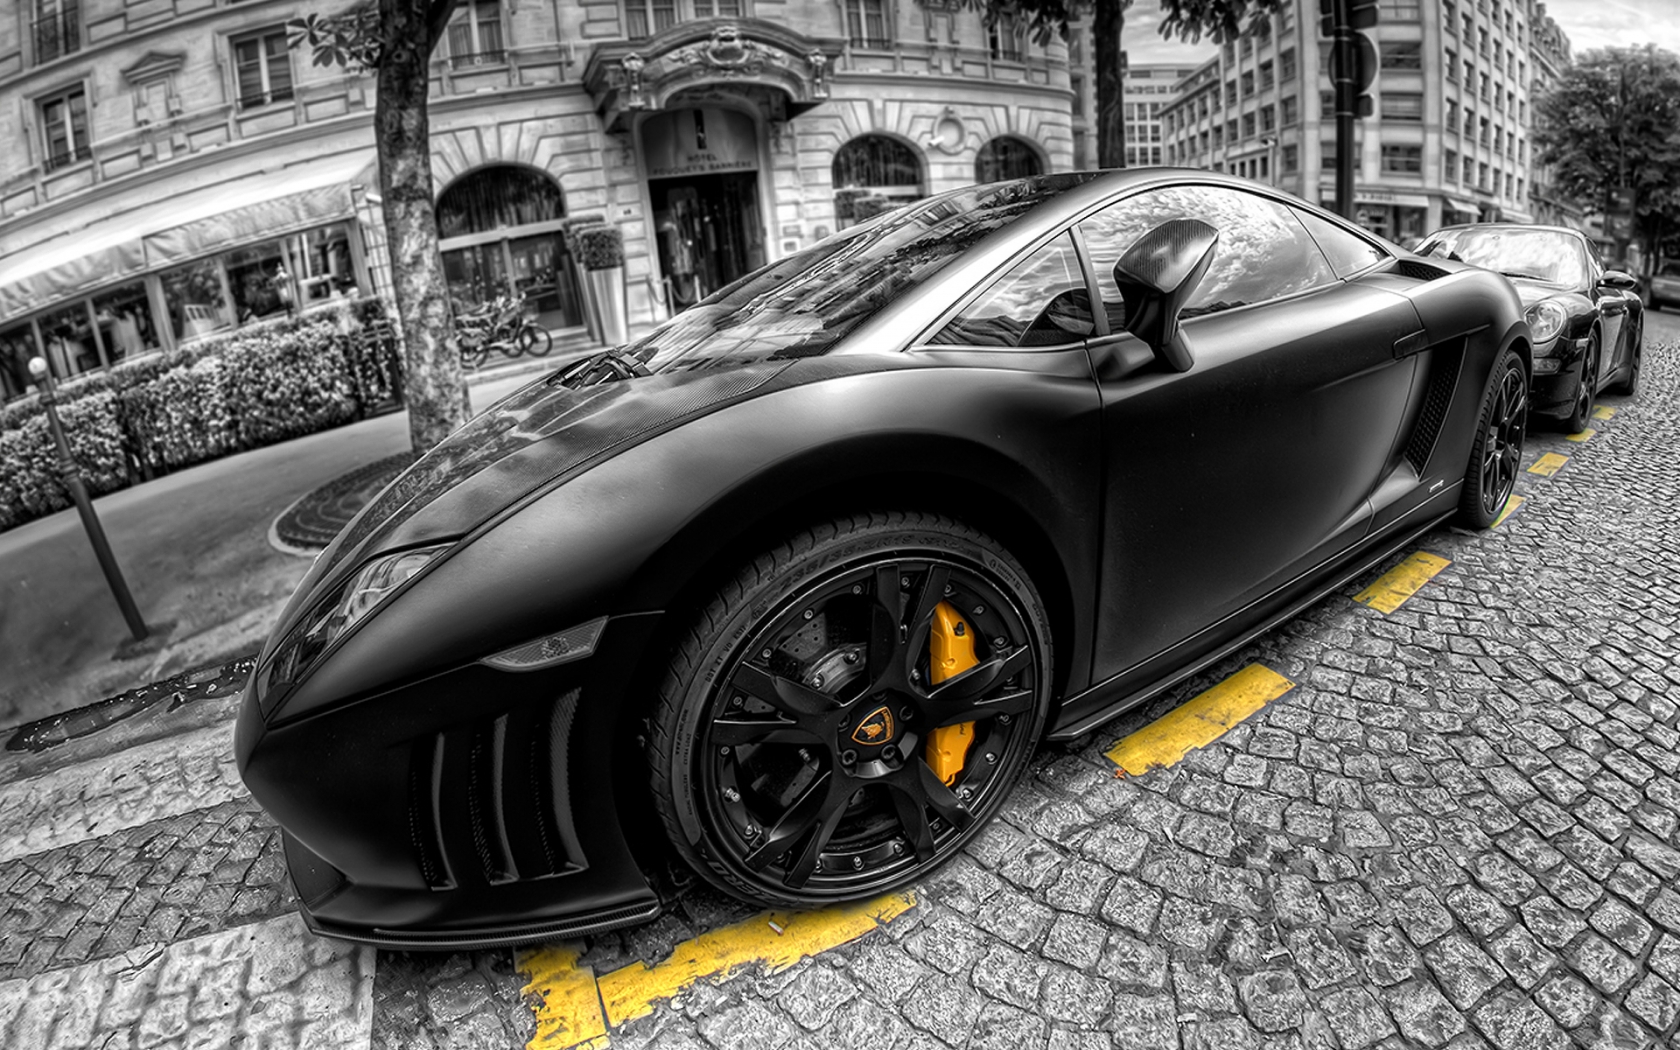 Lamborghini Gallardo Black for 1680 x 1050 widescreen resolution